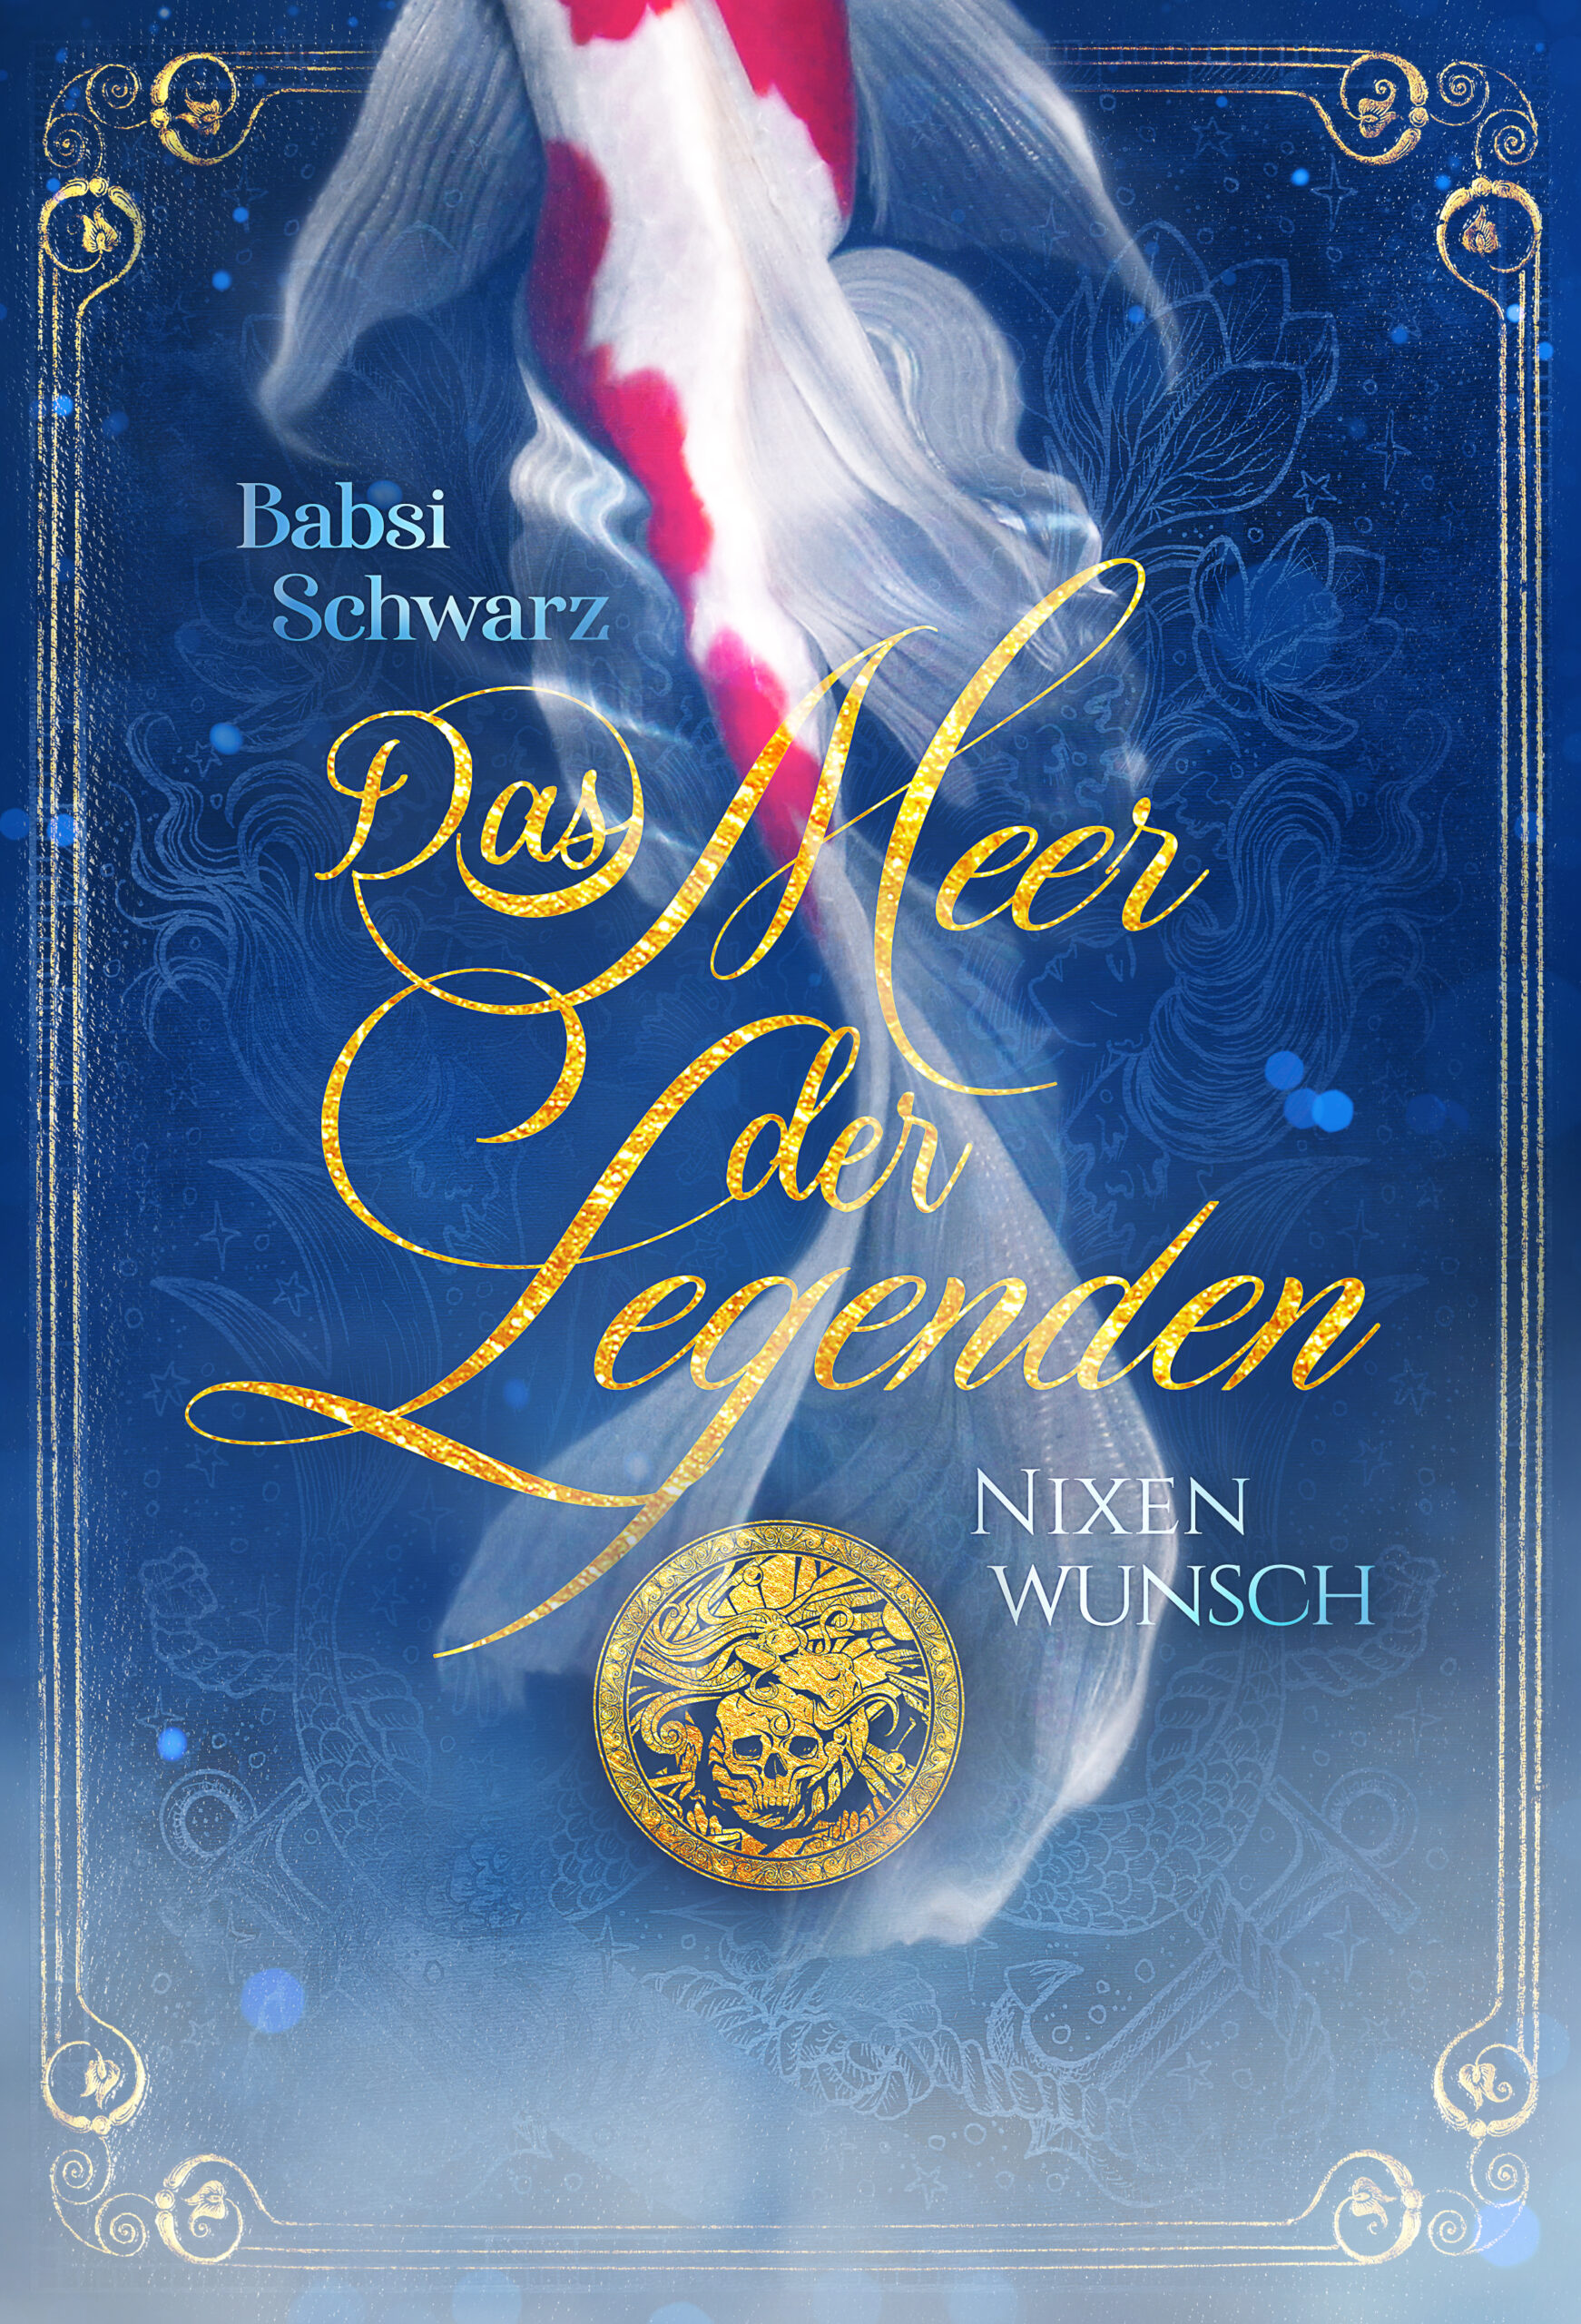 Cover von Meer der Legenden Nixenwunsch. Blau, gold mit Koiflosse